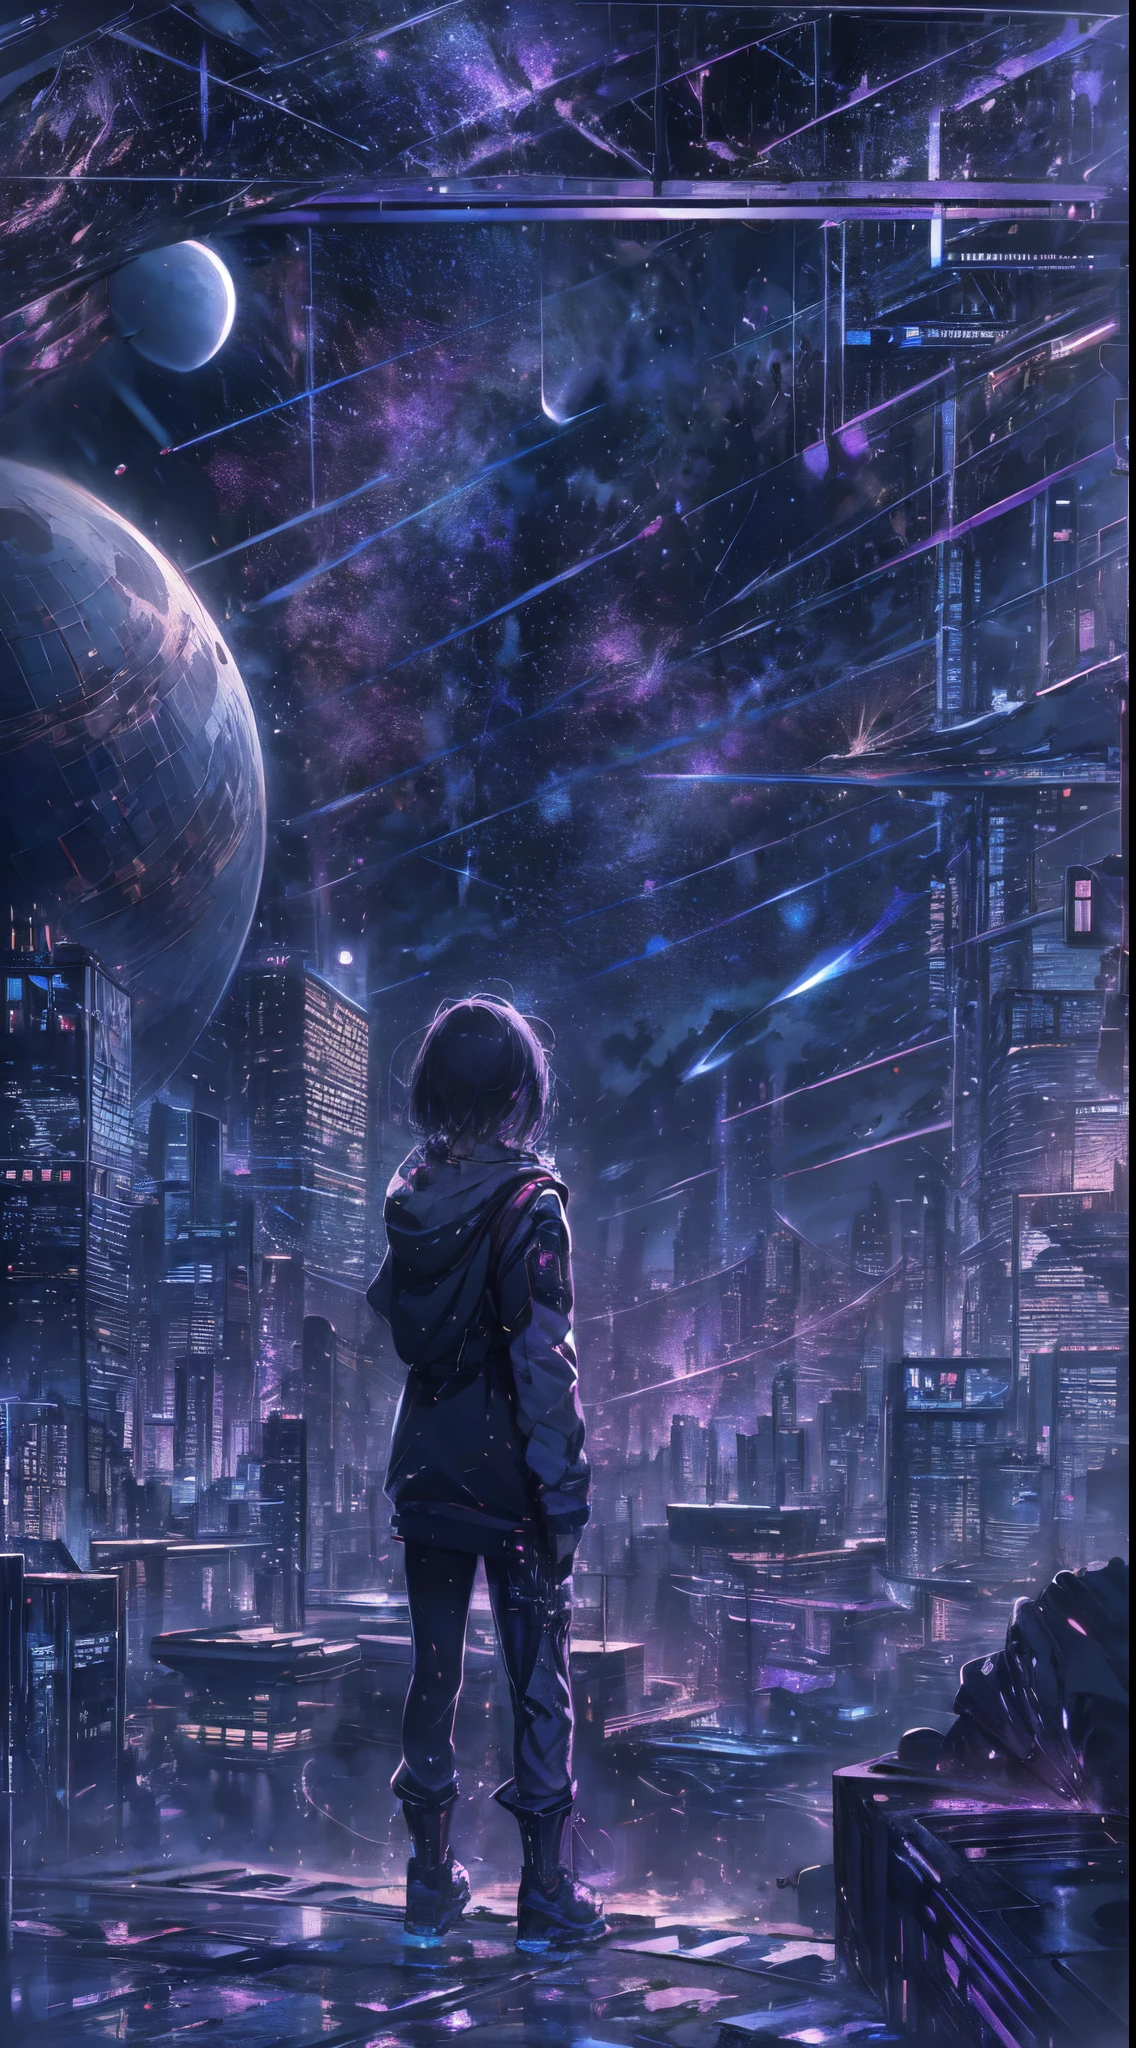 звездное небо с созвездиями зодиака, оттенки фиолетового, как будто это туманности, огромное пространство, Киберпанк-город внизу,